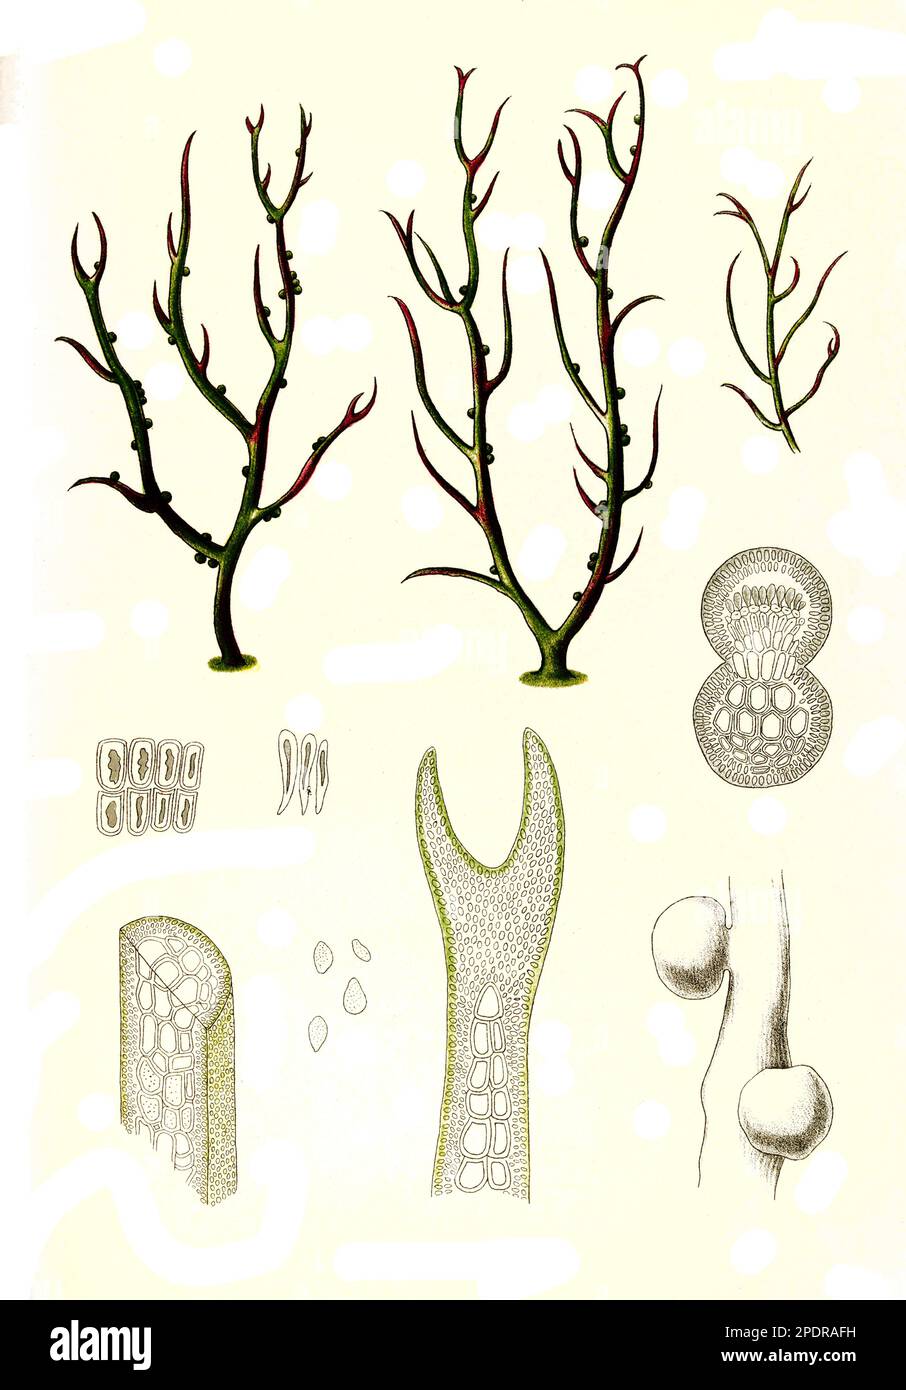 Gracilaria lichenoides greville, Gracilaria ist eine Gattung von Rotalgen (Rhodophyta), die für ihre wirtschaftliche Bedeutung als Agarophyt sowie für ihre Verwendung als Nahrungsmittel für Menschen und verschiedene Arten von Schalentieren bekannt ist, Historisch, digital restaurierte Reproduktion von einer Vorlage aus dem 18. Jahrhundert, Stock Photo